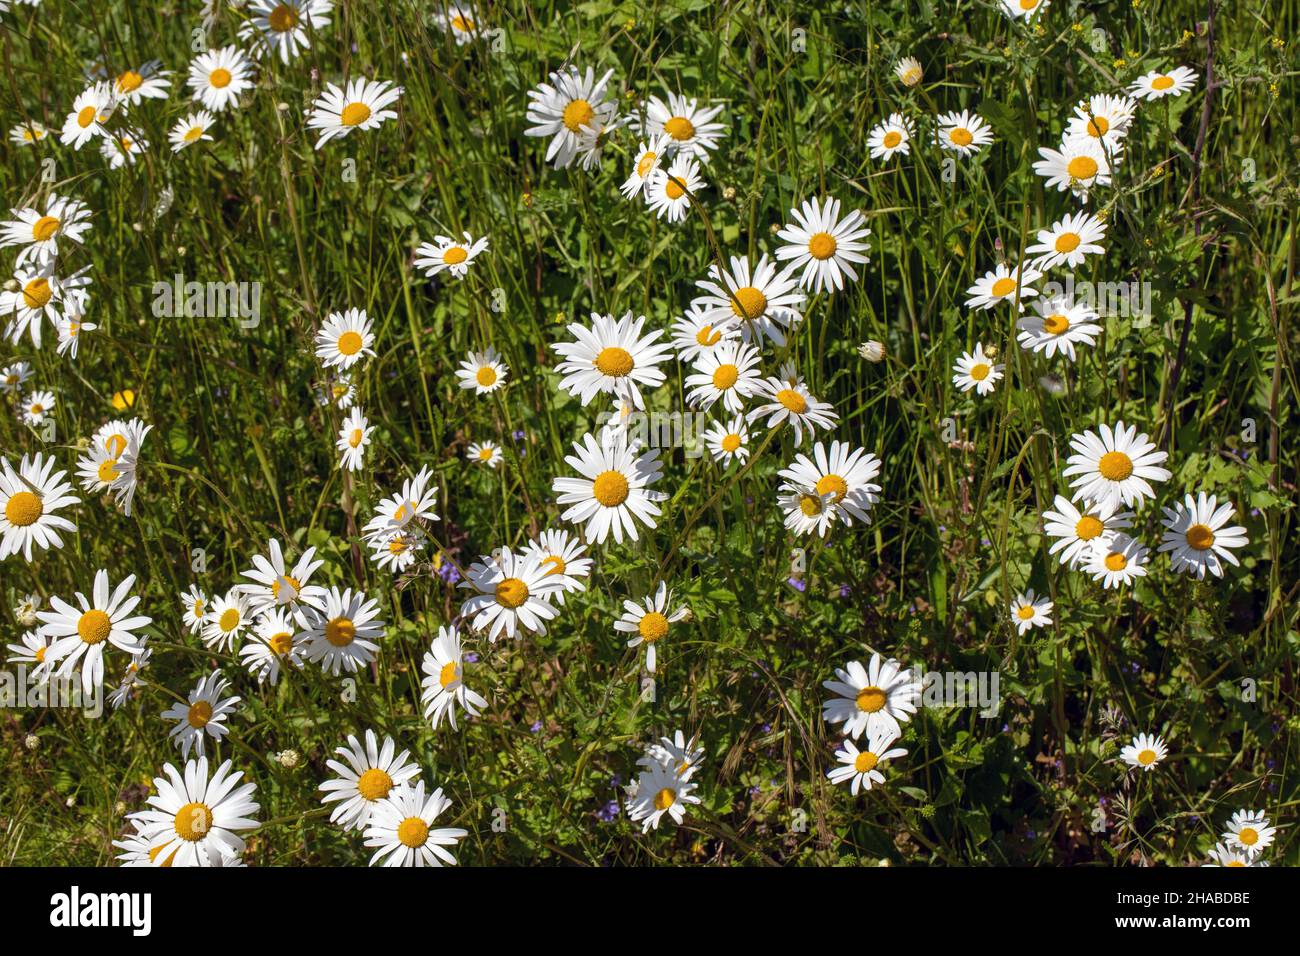 Daisy Oxilo (Leucanthemum vulgare). Plantas de flores silvestres verdes, cabezas de flores blancas y amarillas que anuncian la presencia de invertebrados polinizadores, insectos. Foto de stock